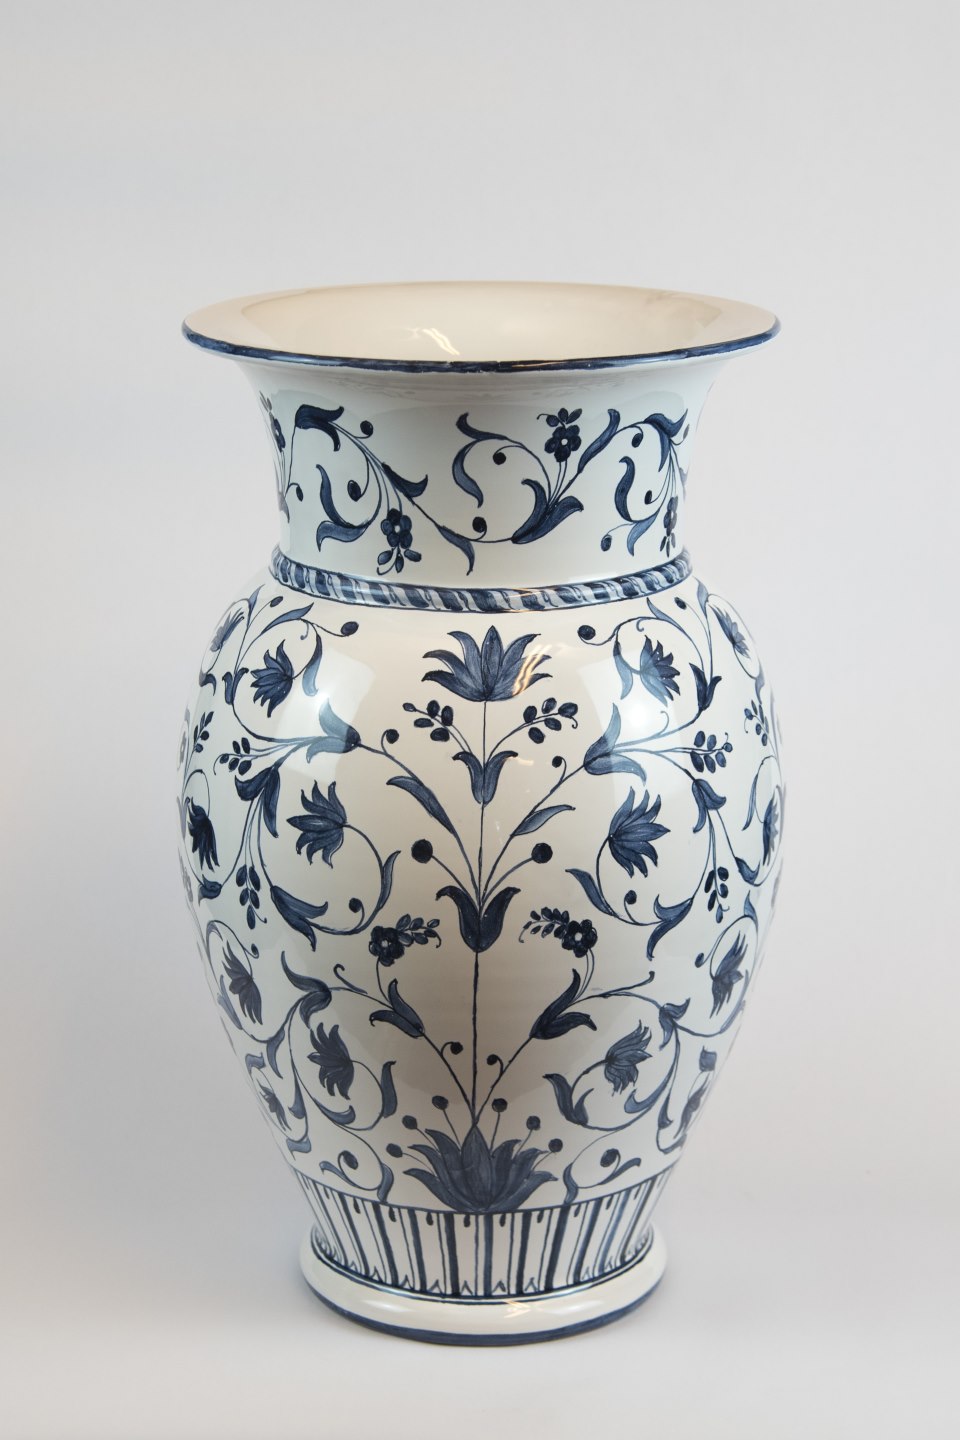 Grande vaso decoro orientale. Tradizione. Ceramiche Pierluca. Albisola, Savona.